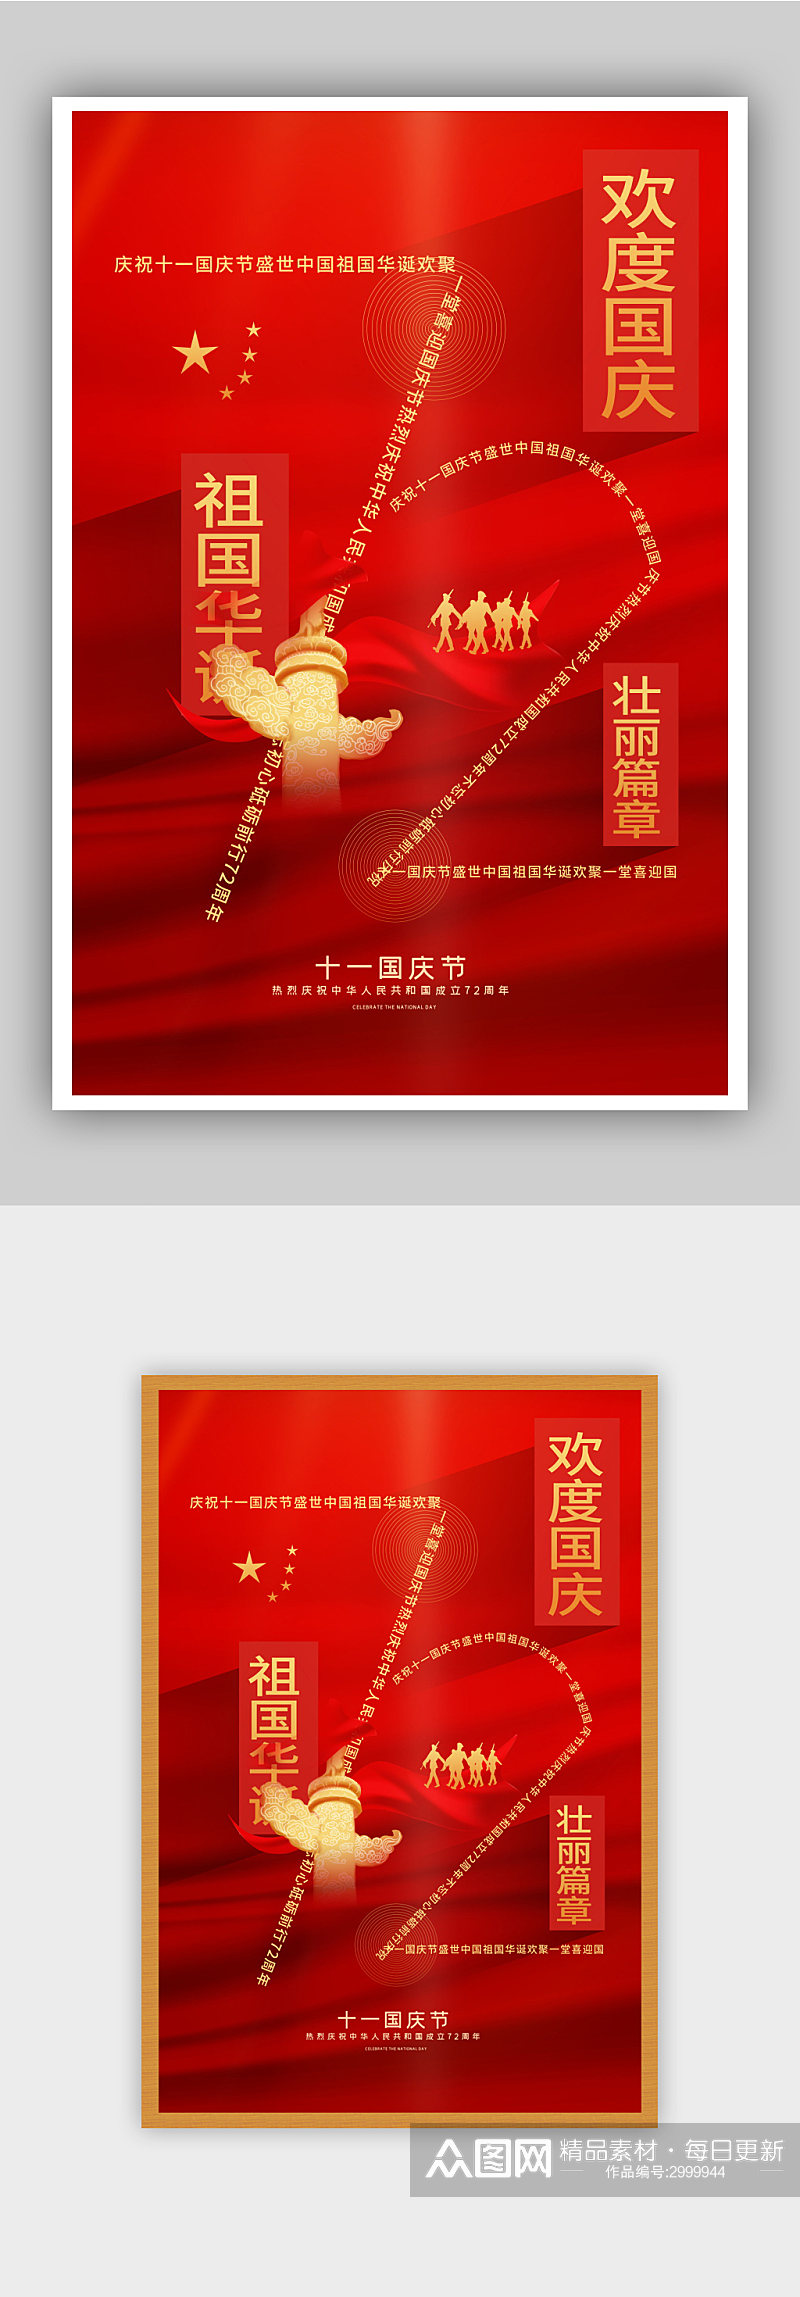 红色简约建国72周年国庆节主题海报素材